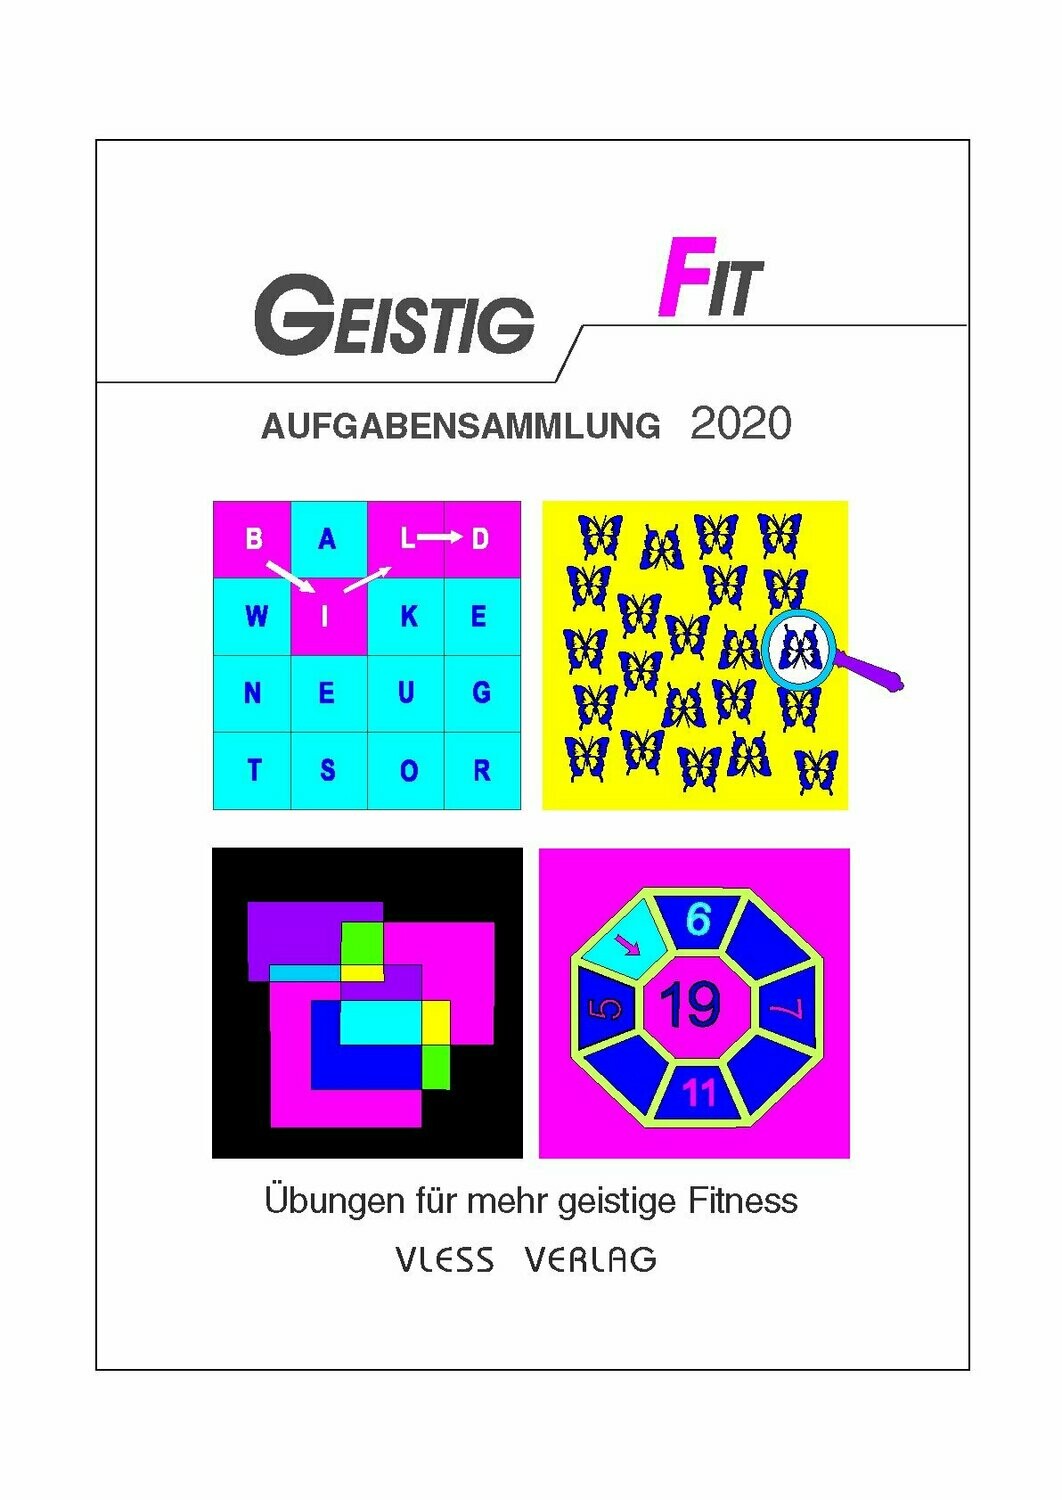 GEISTIG FIT Aufgabensammlung 2020